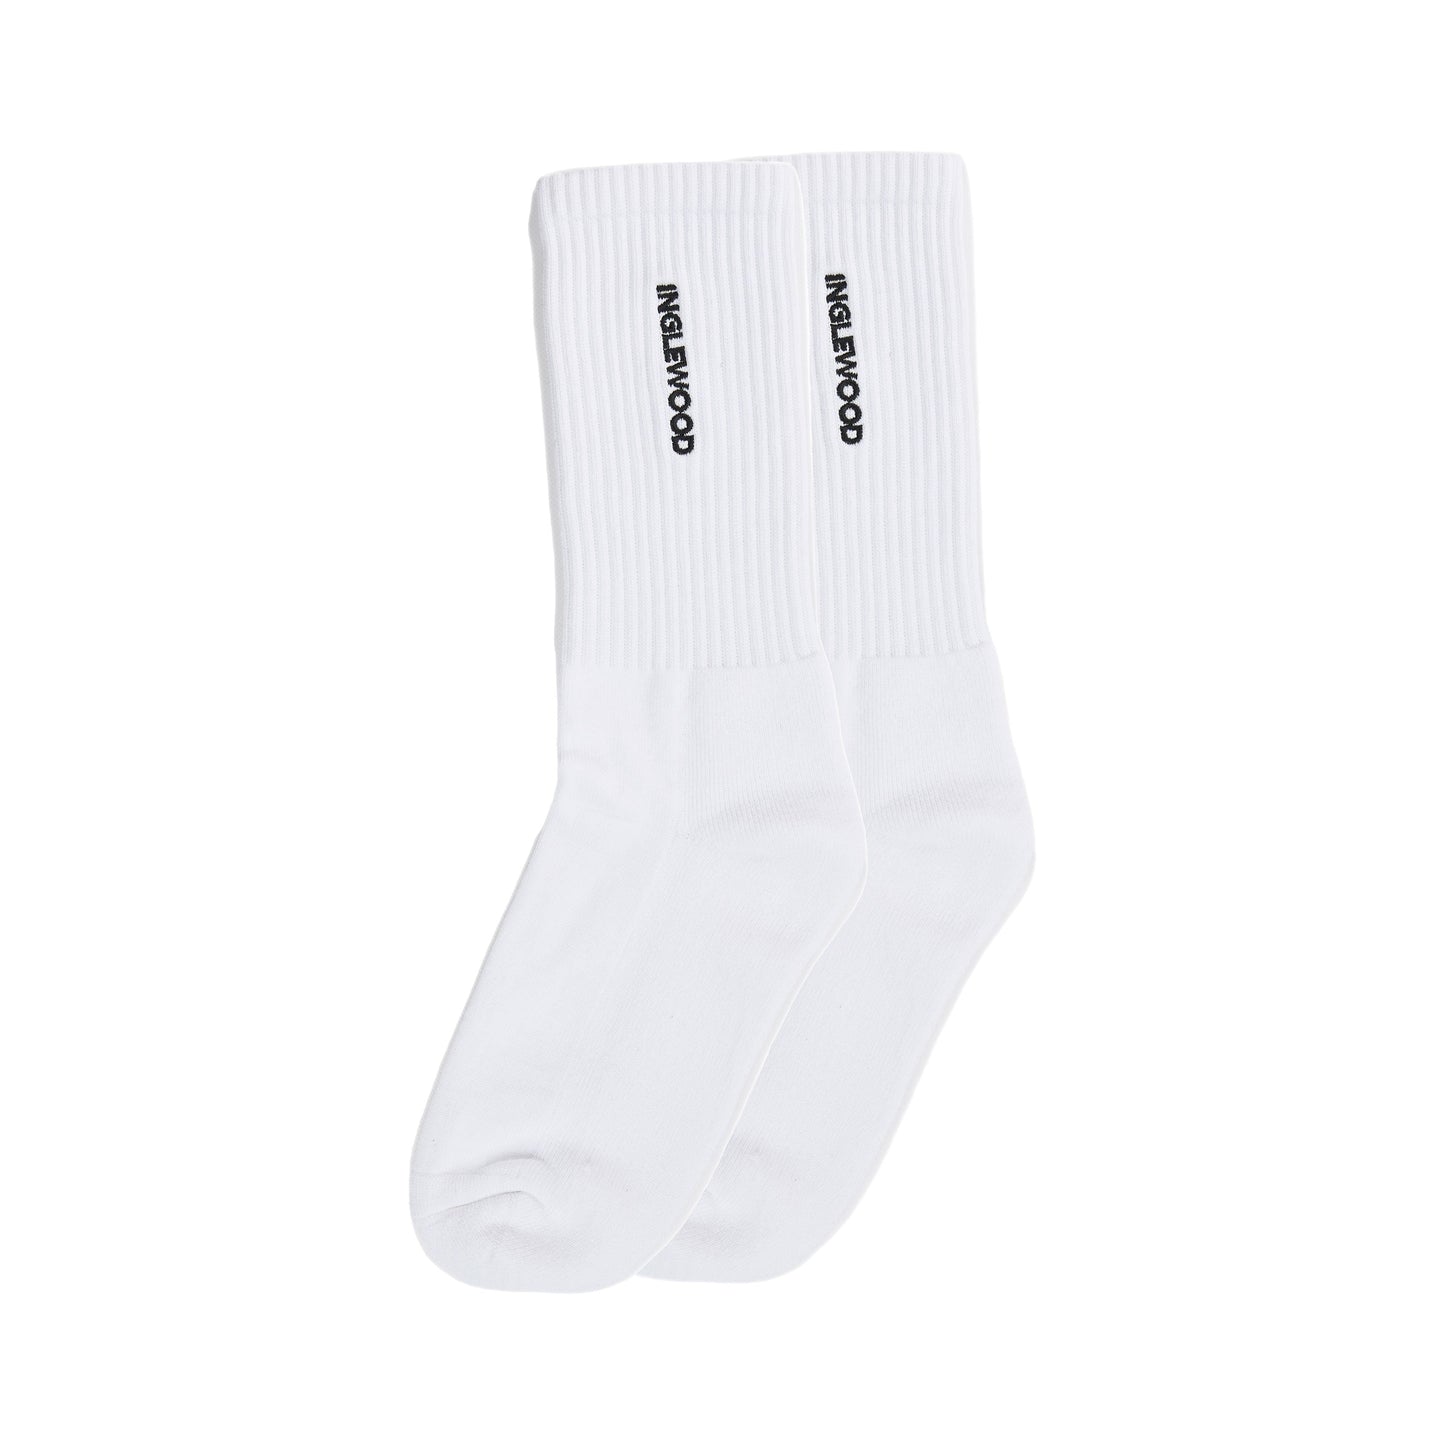 Inglewood Socks - 1 Pack (White)